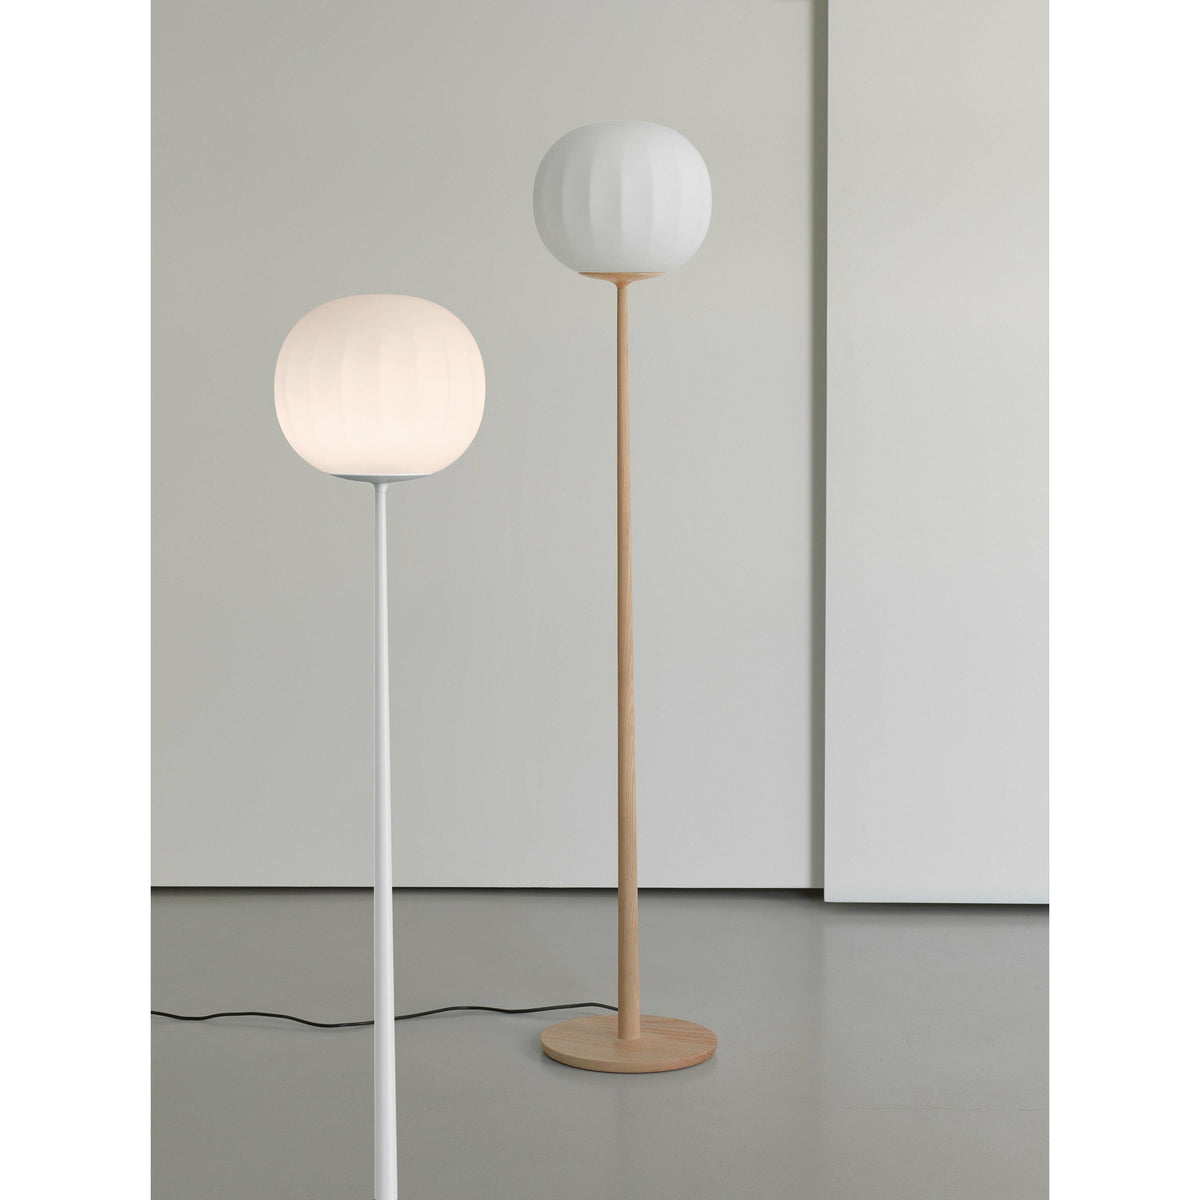 Luceplan - Lita Floor Lamp - 1D920T300502 + 1D920/300002 | Montreal Lighting & Hardware